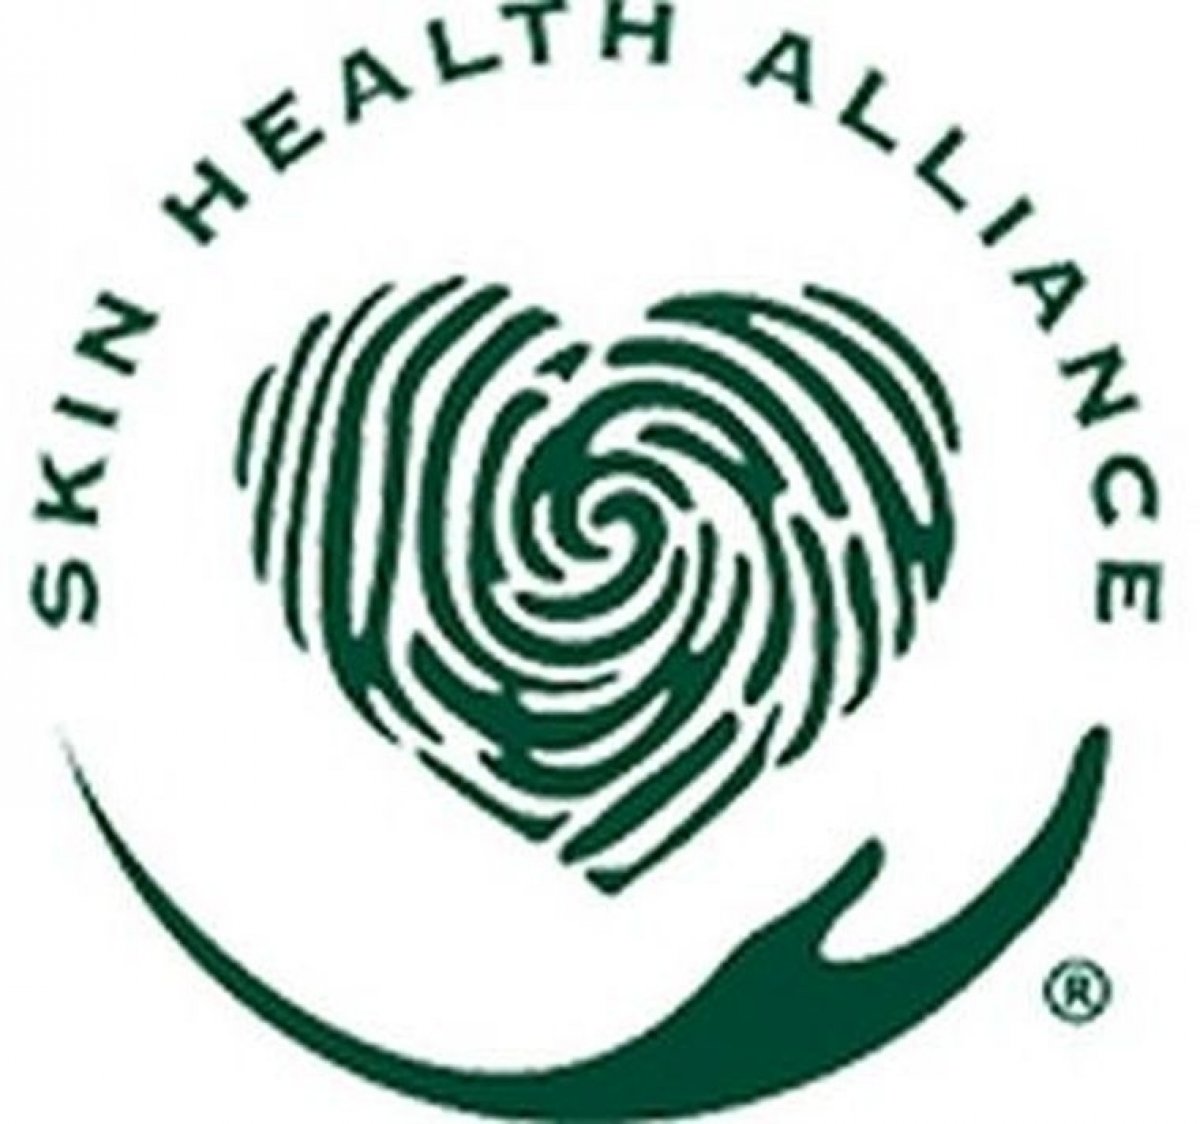 Schválila aliance pro zdraví pokožky Skin Health Alliance